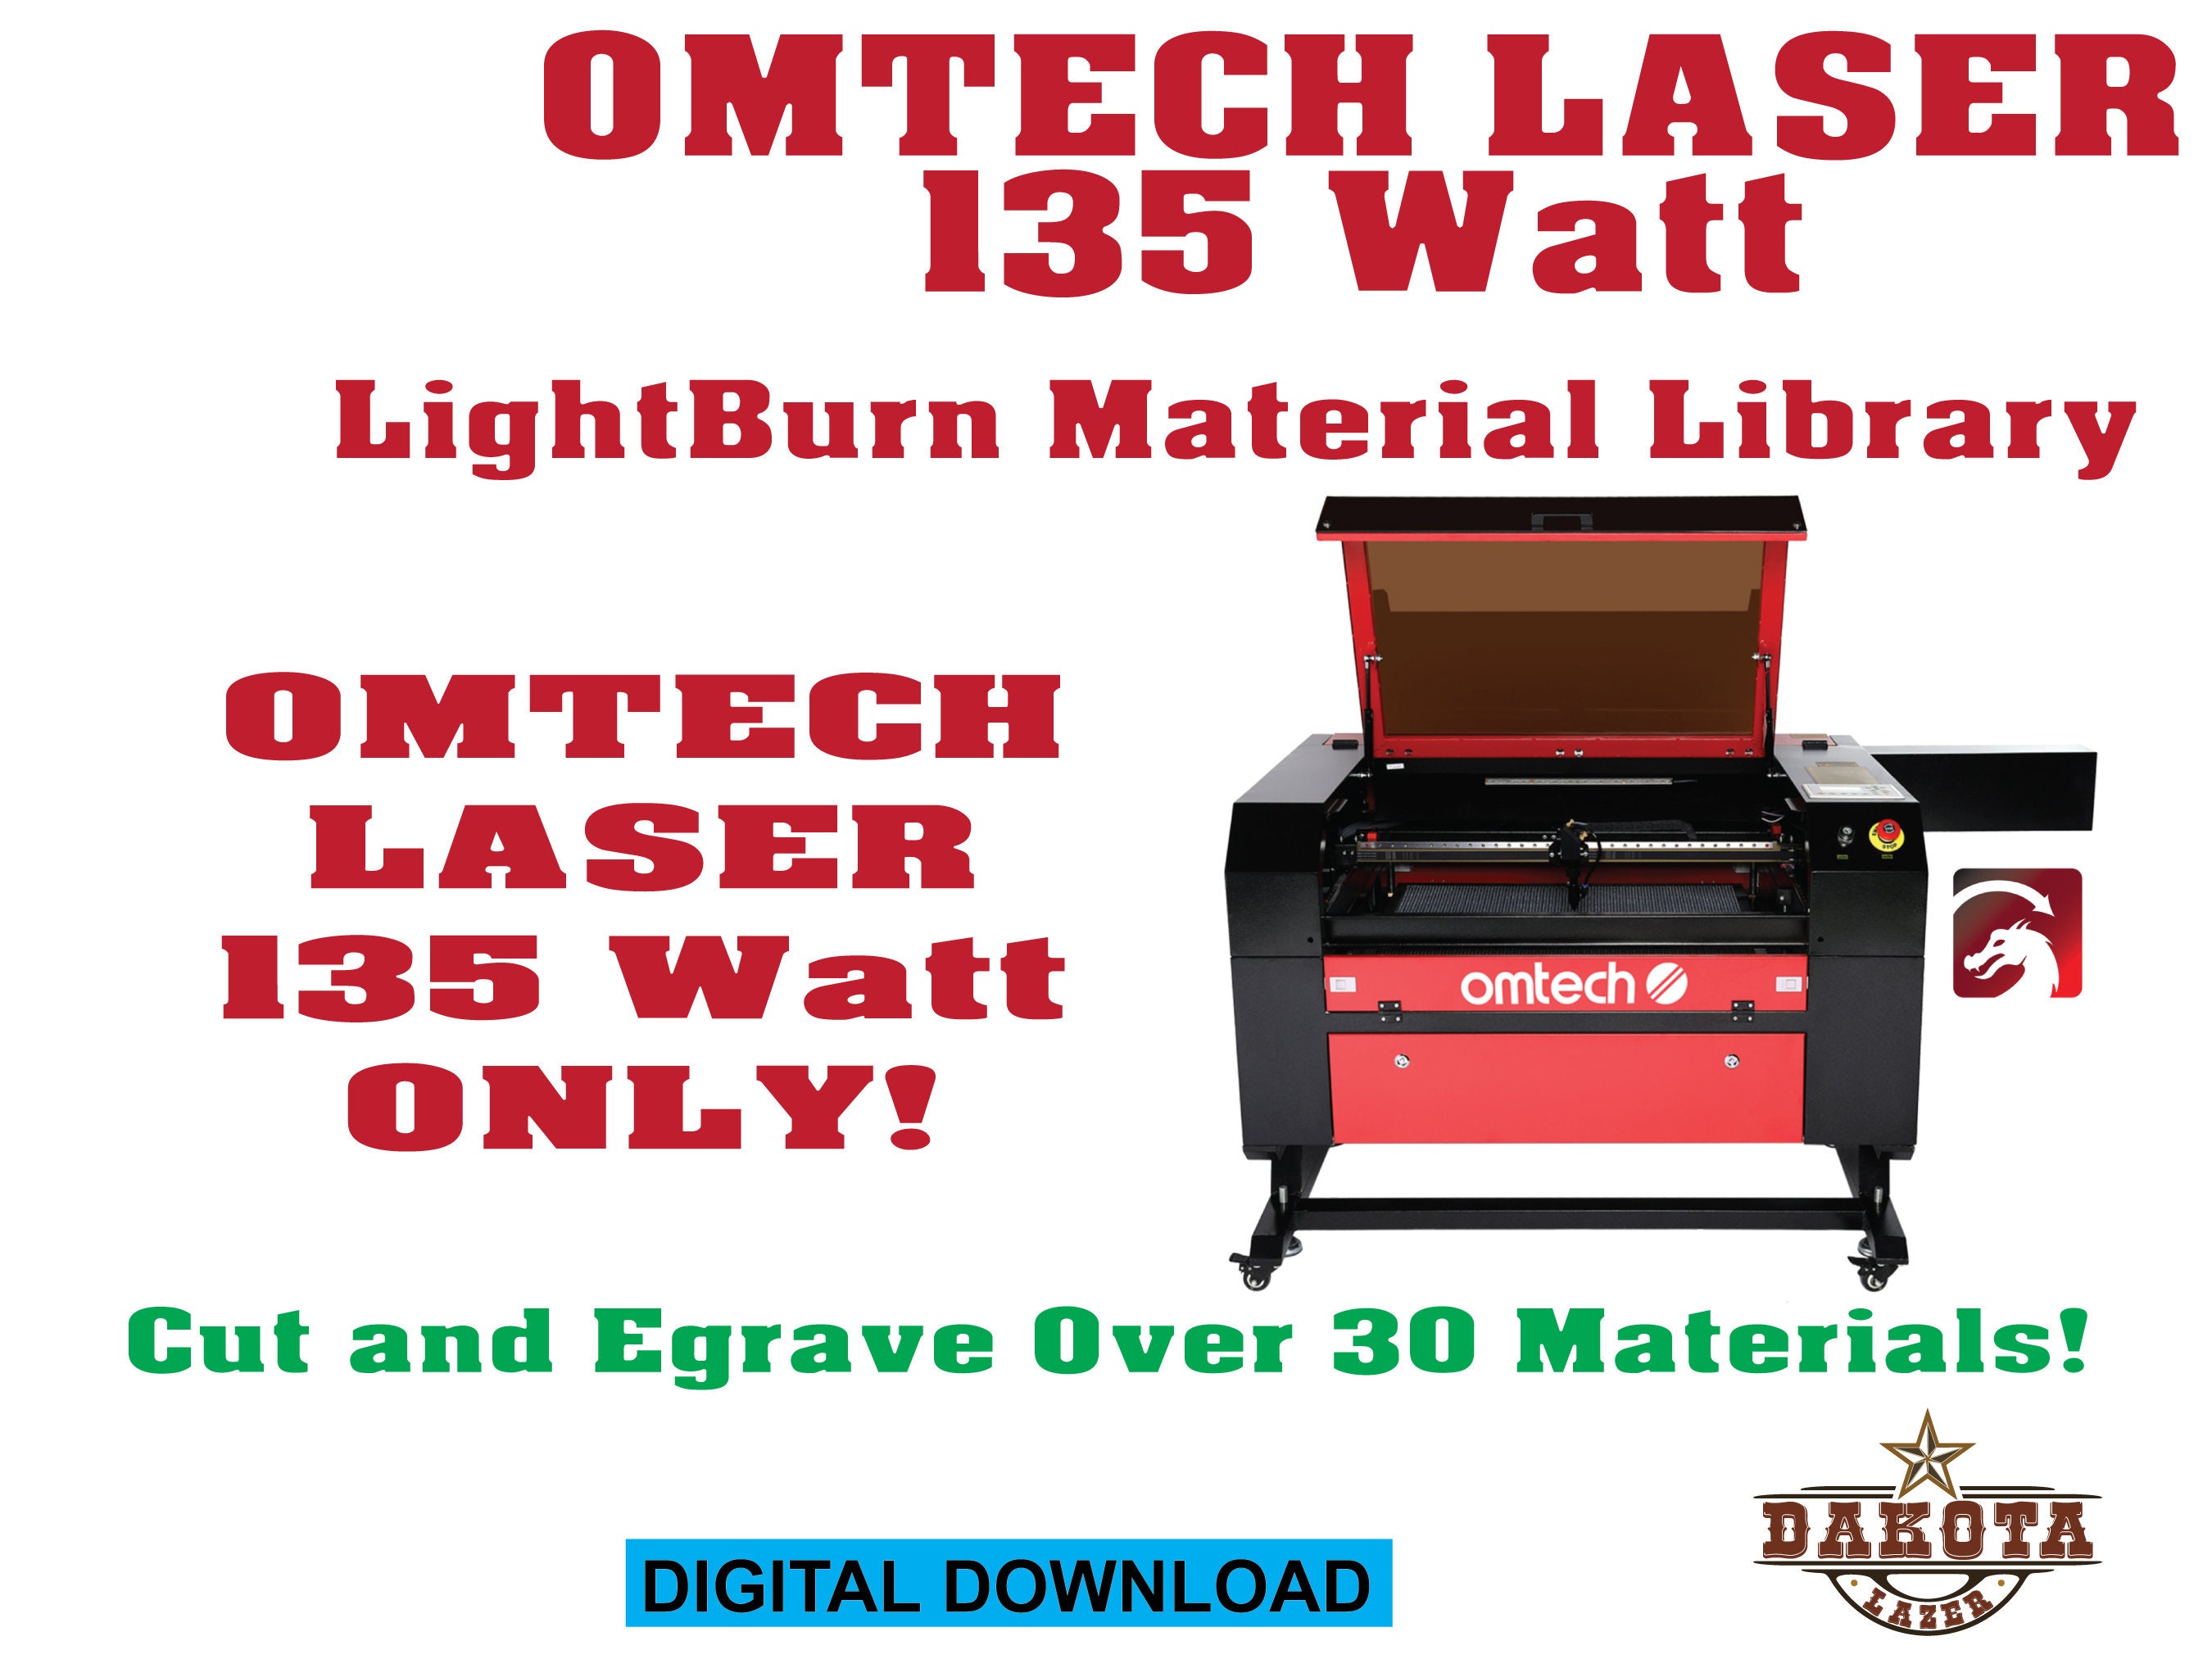 OMTECH Laser 135 Watt Lightburn Materials Library and Ultimate Laser Tools OMTECH  Laser 135 Watt ONLY 